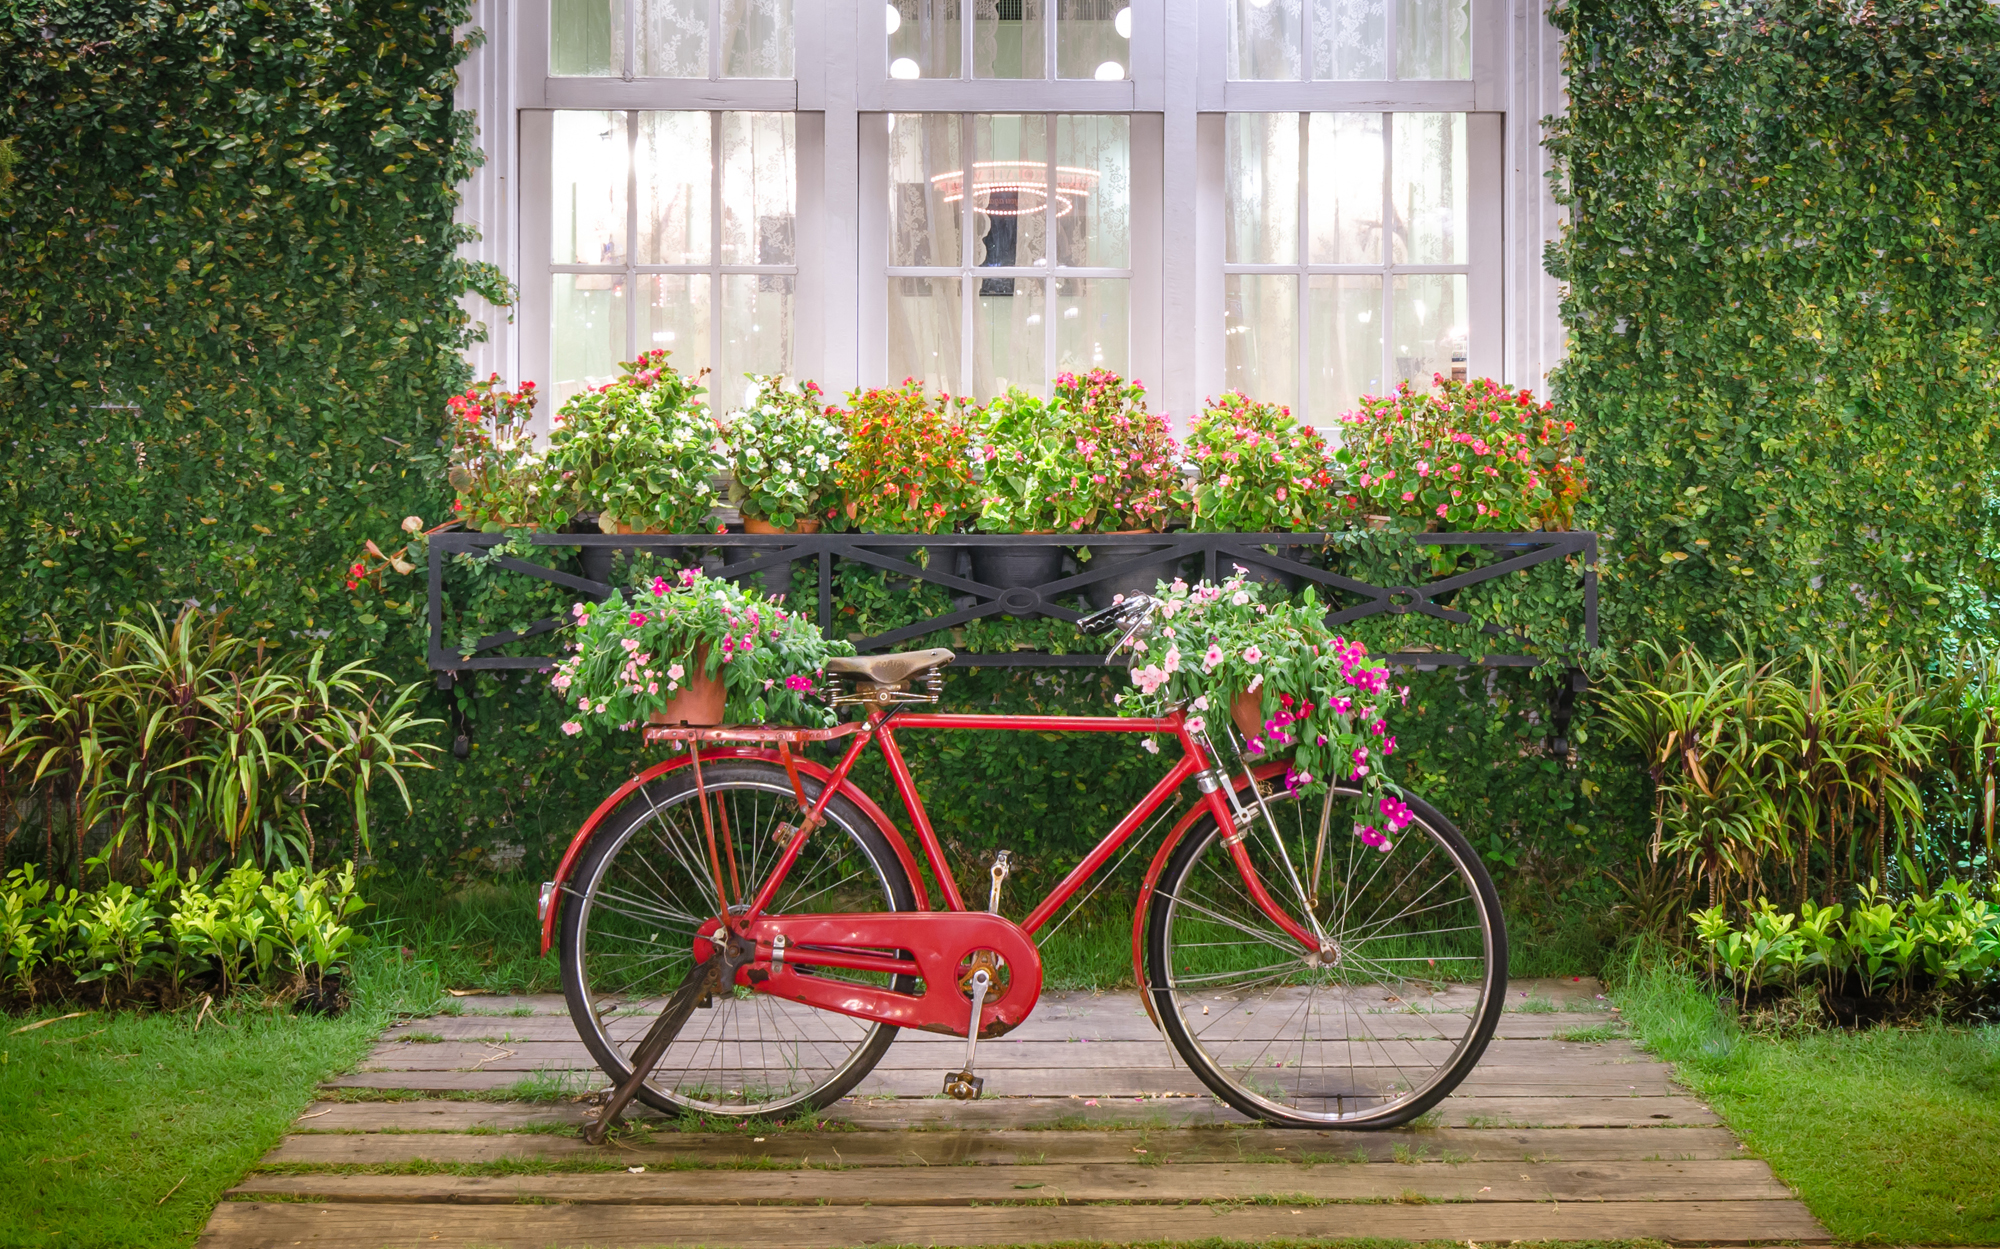 Велосипед в цветах зеленый. Велосипед с цветами. Велосипед в интерьере сада. Велосипед у забора. Композиции с велосипедом в саду.